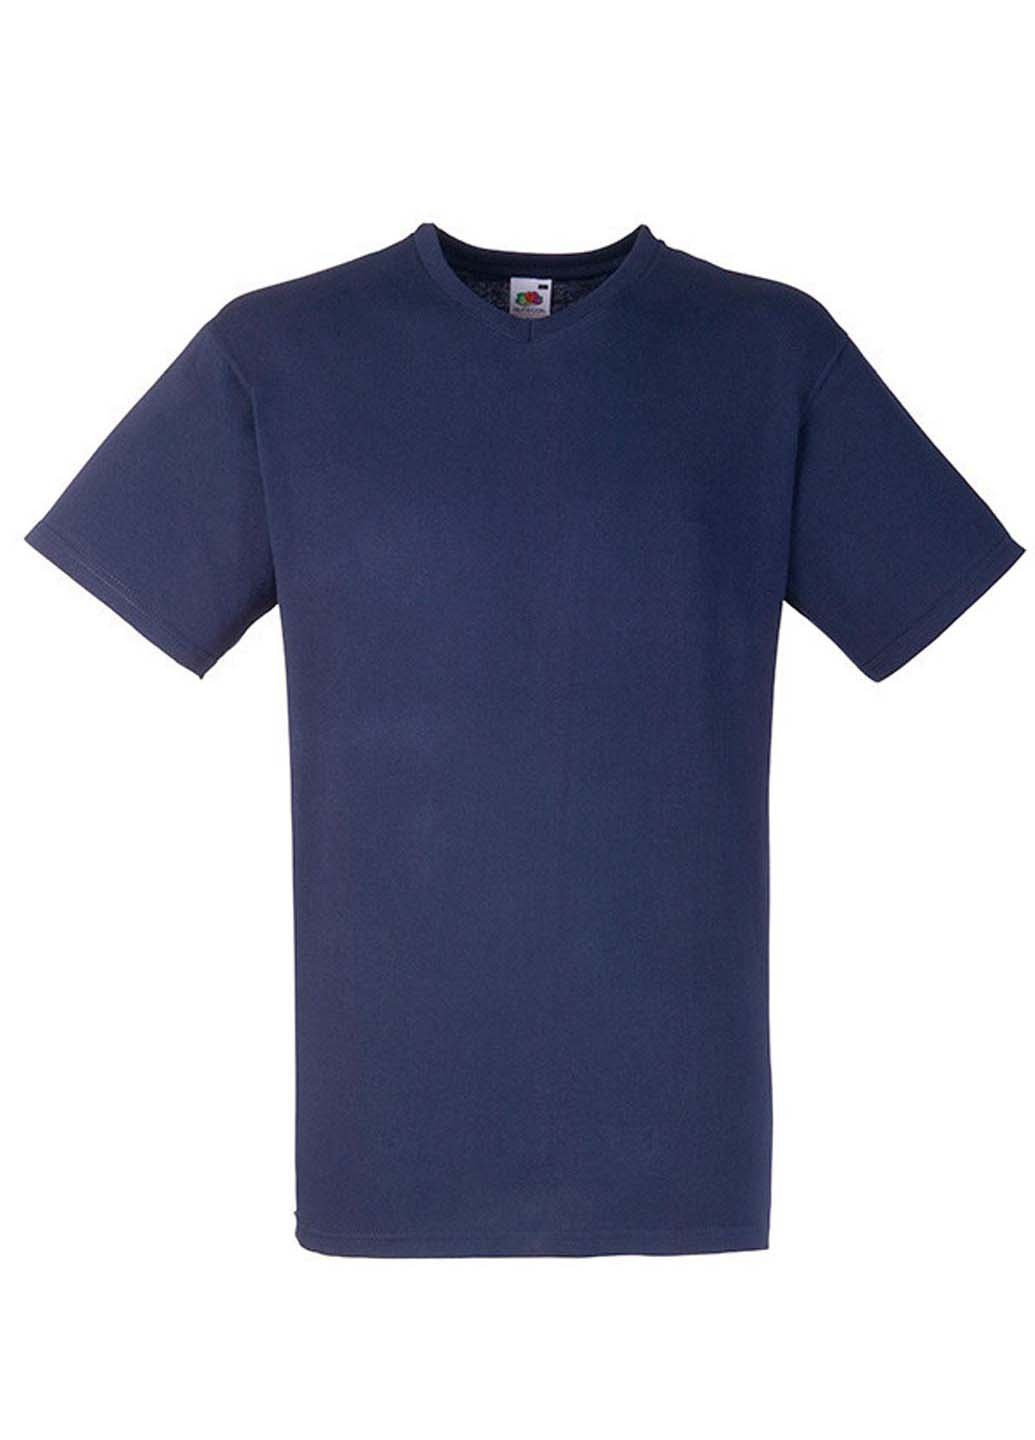 Темно-синяя футболка Fruit of the Loom Valueweight v-neck